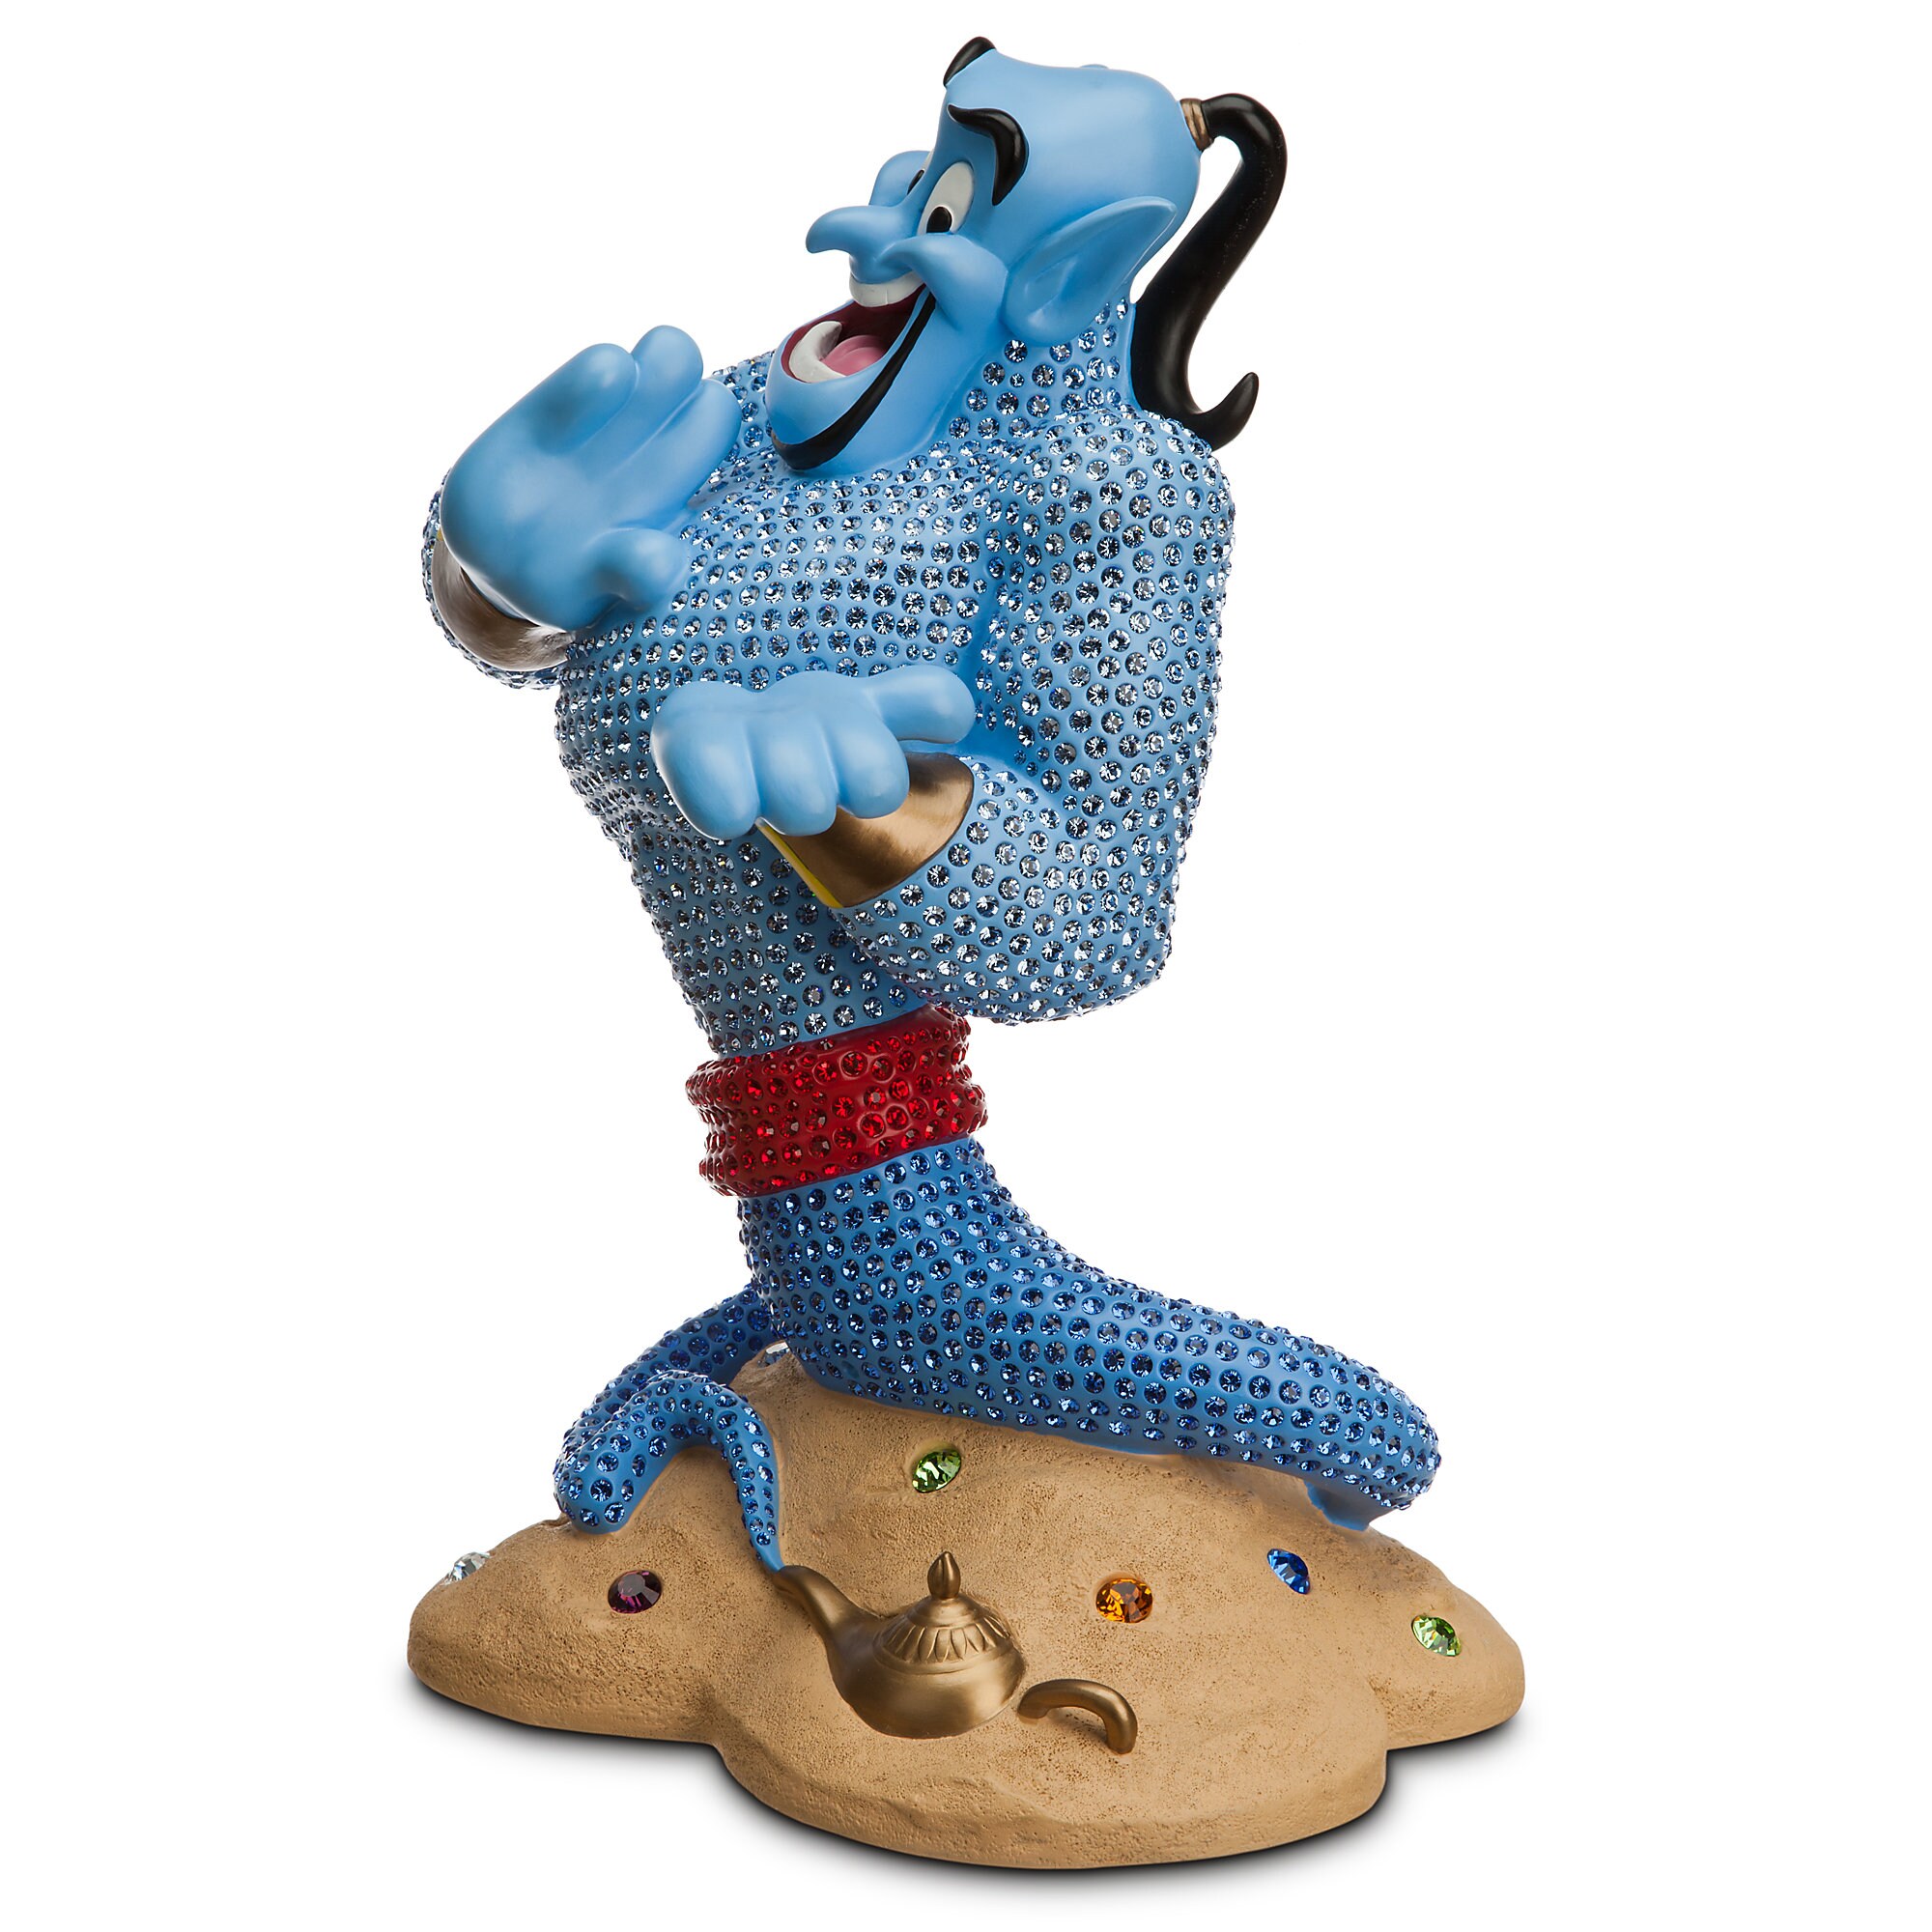 Genie Figurine by Arribas